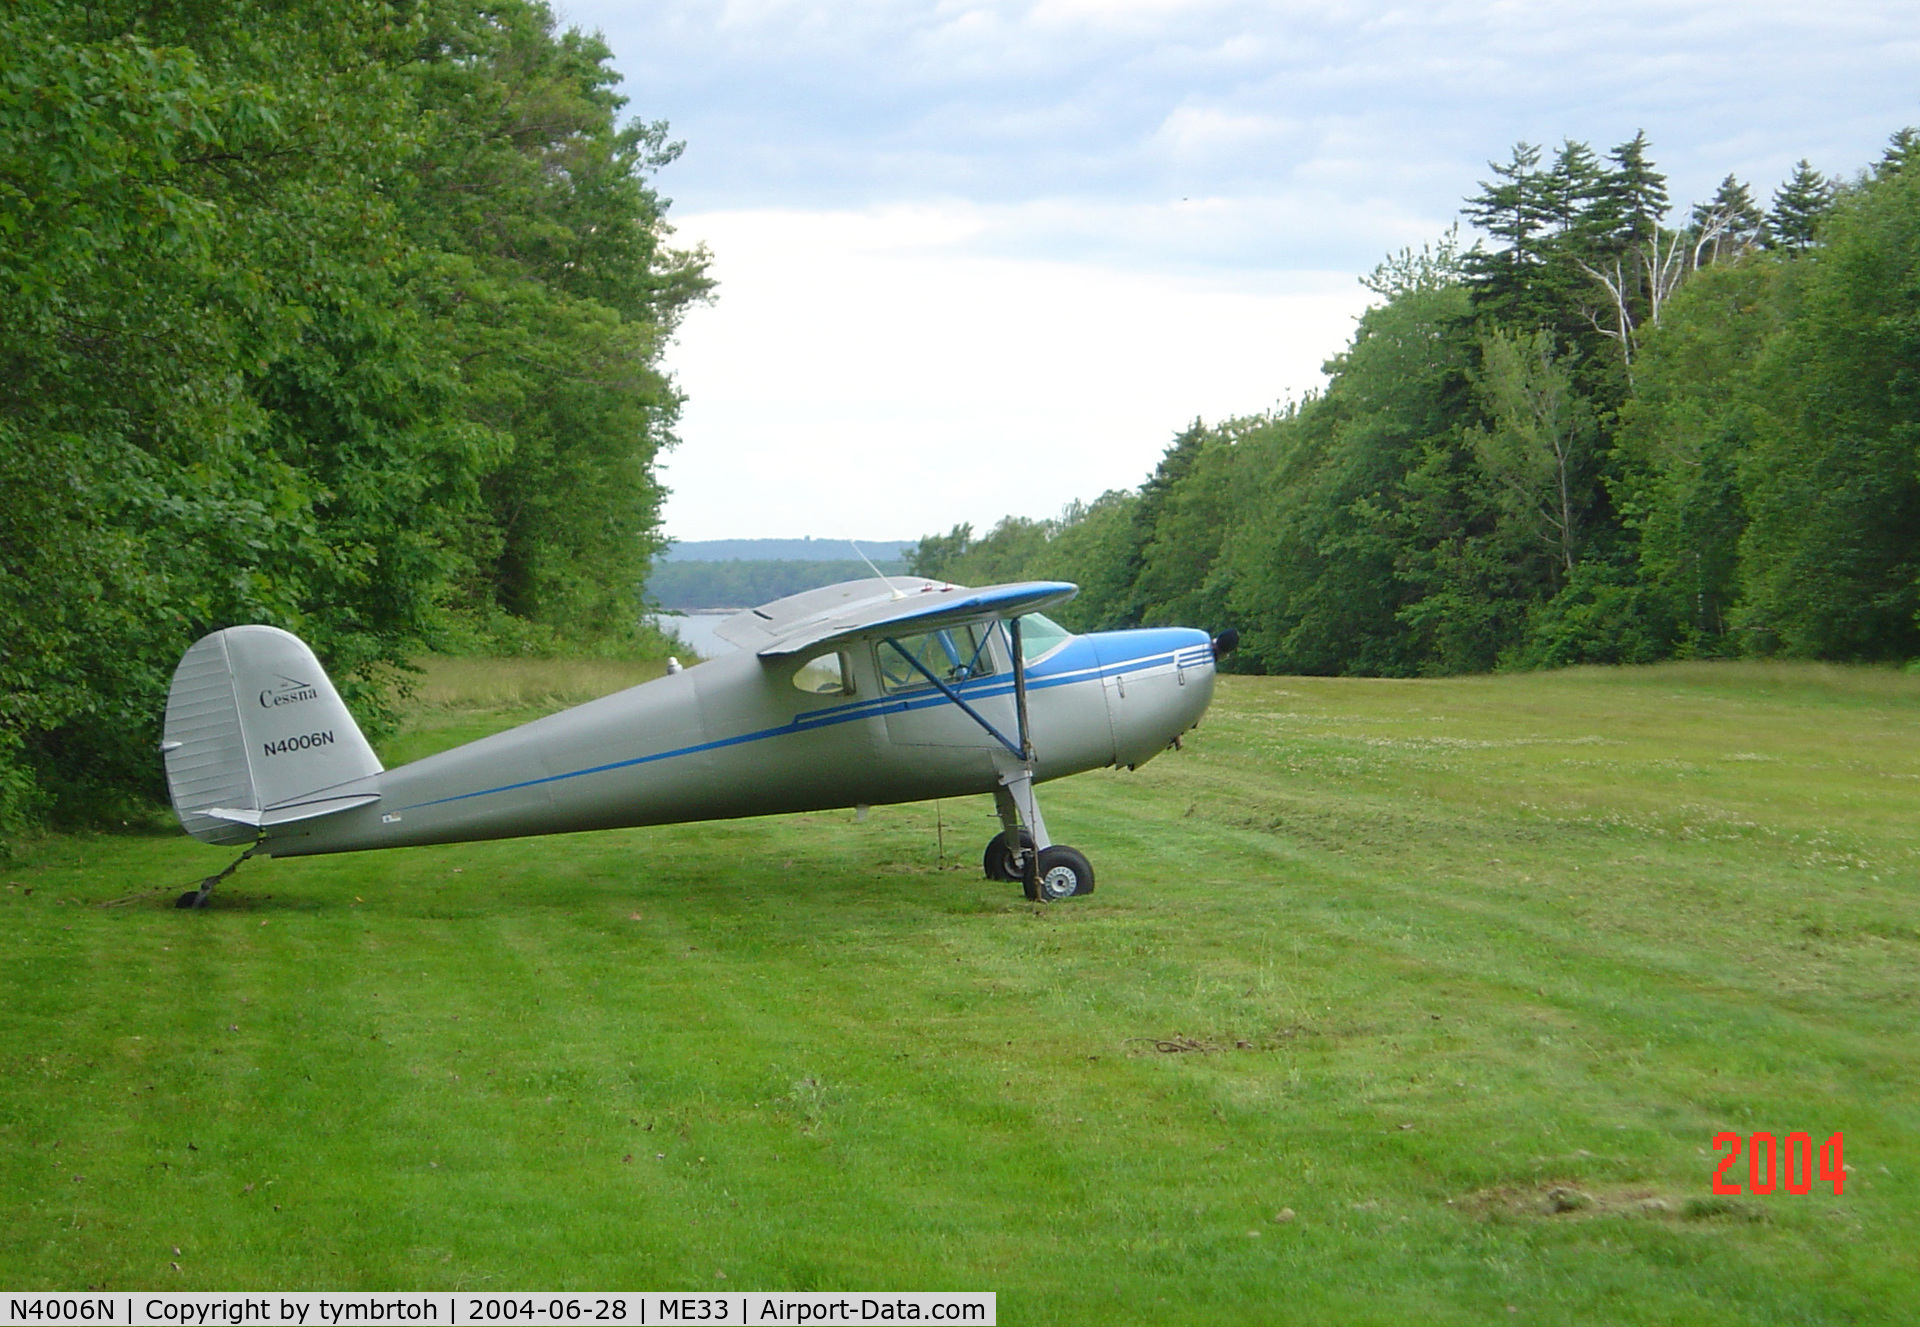 N4006N, 1947 Cessna 140 C/N 13464, Farr Field, Harpswell Maine